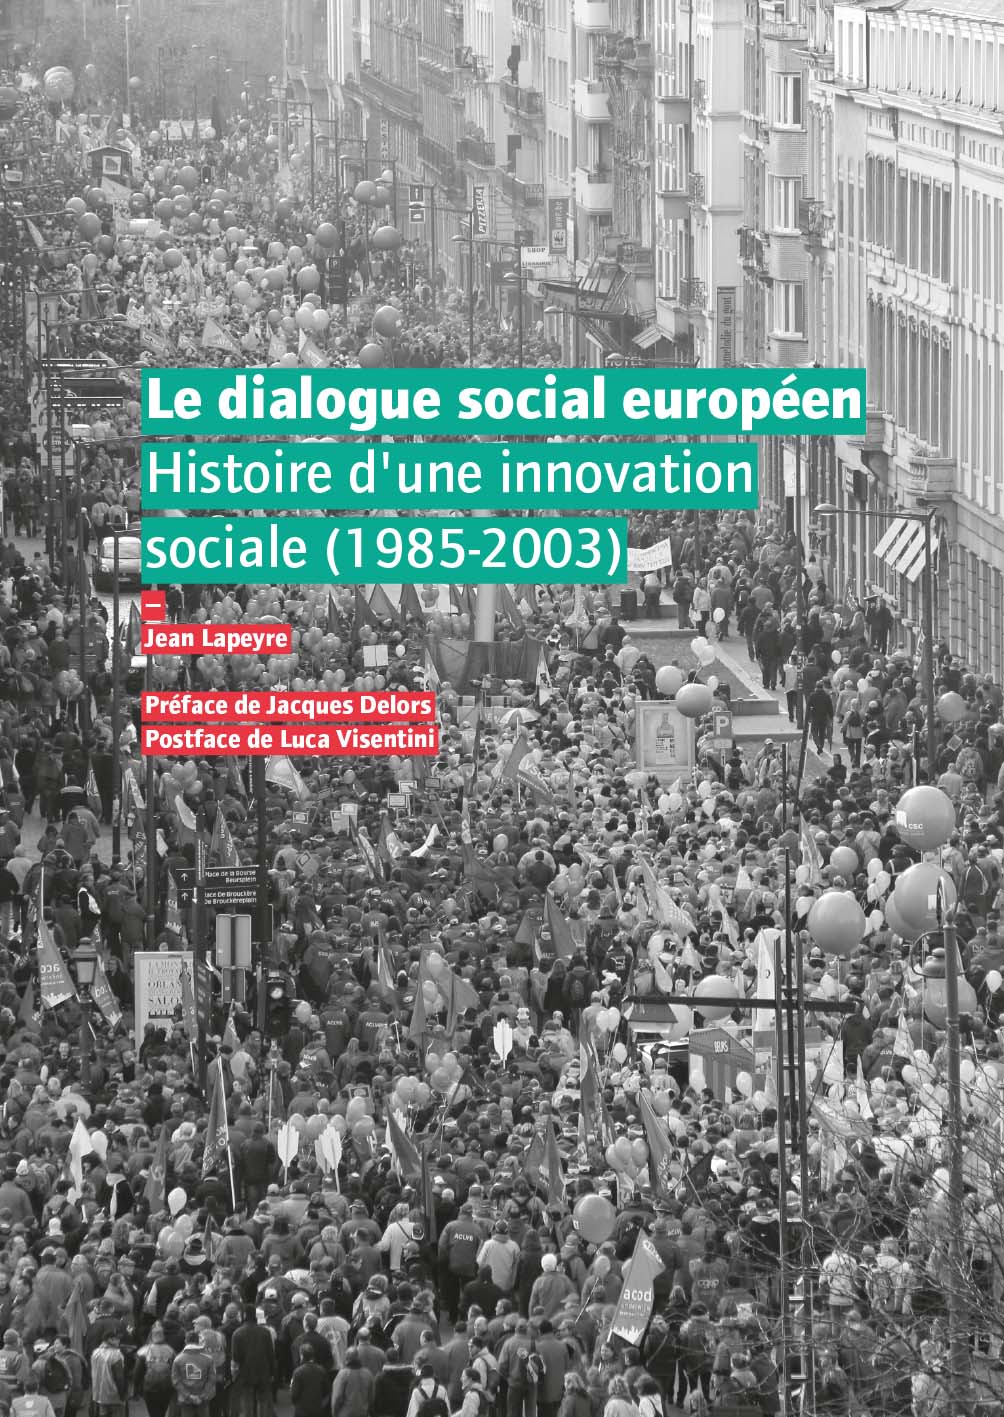 Le dialogue social européen etui, bruxelles, 2017, 287 pages, 25 euros